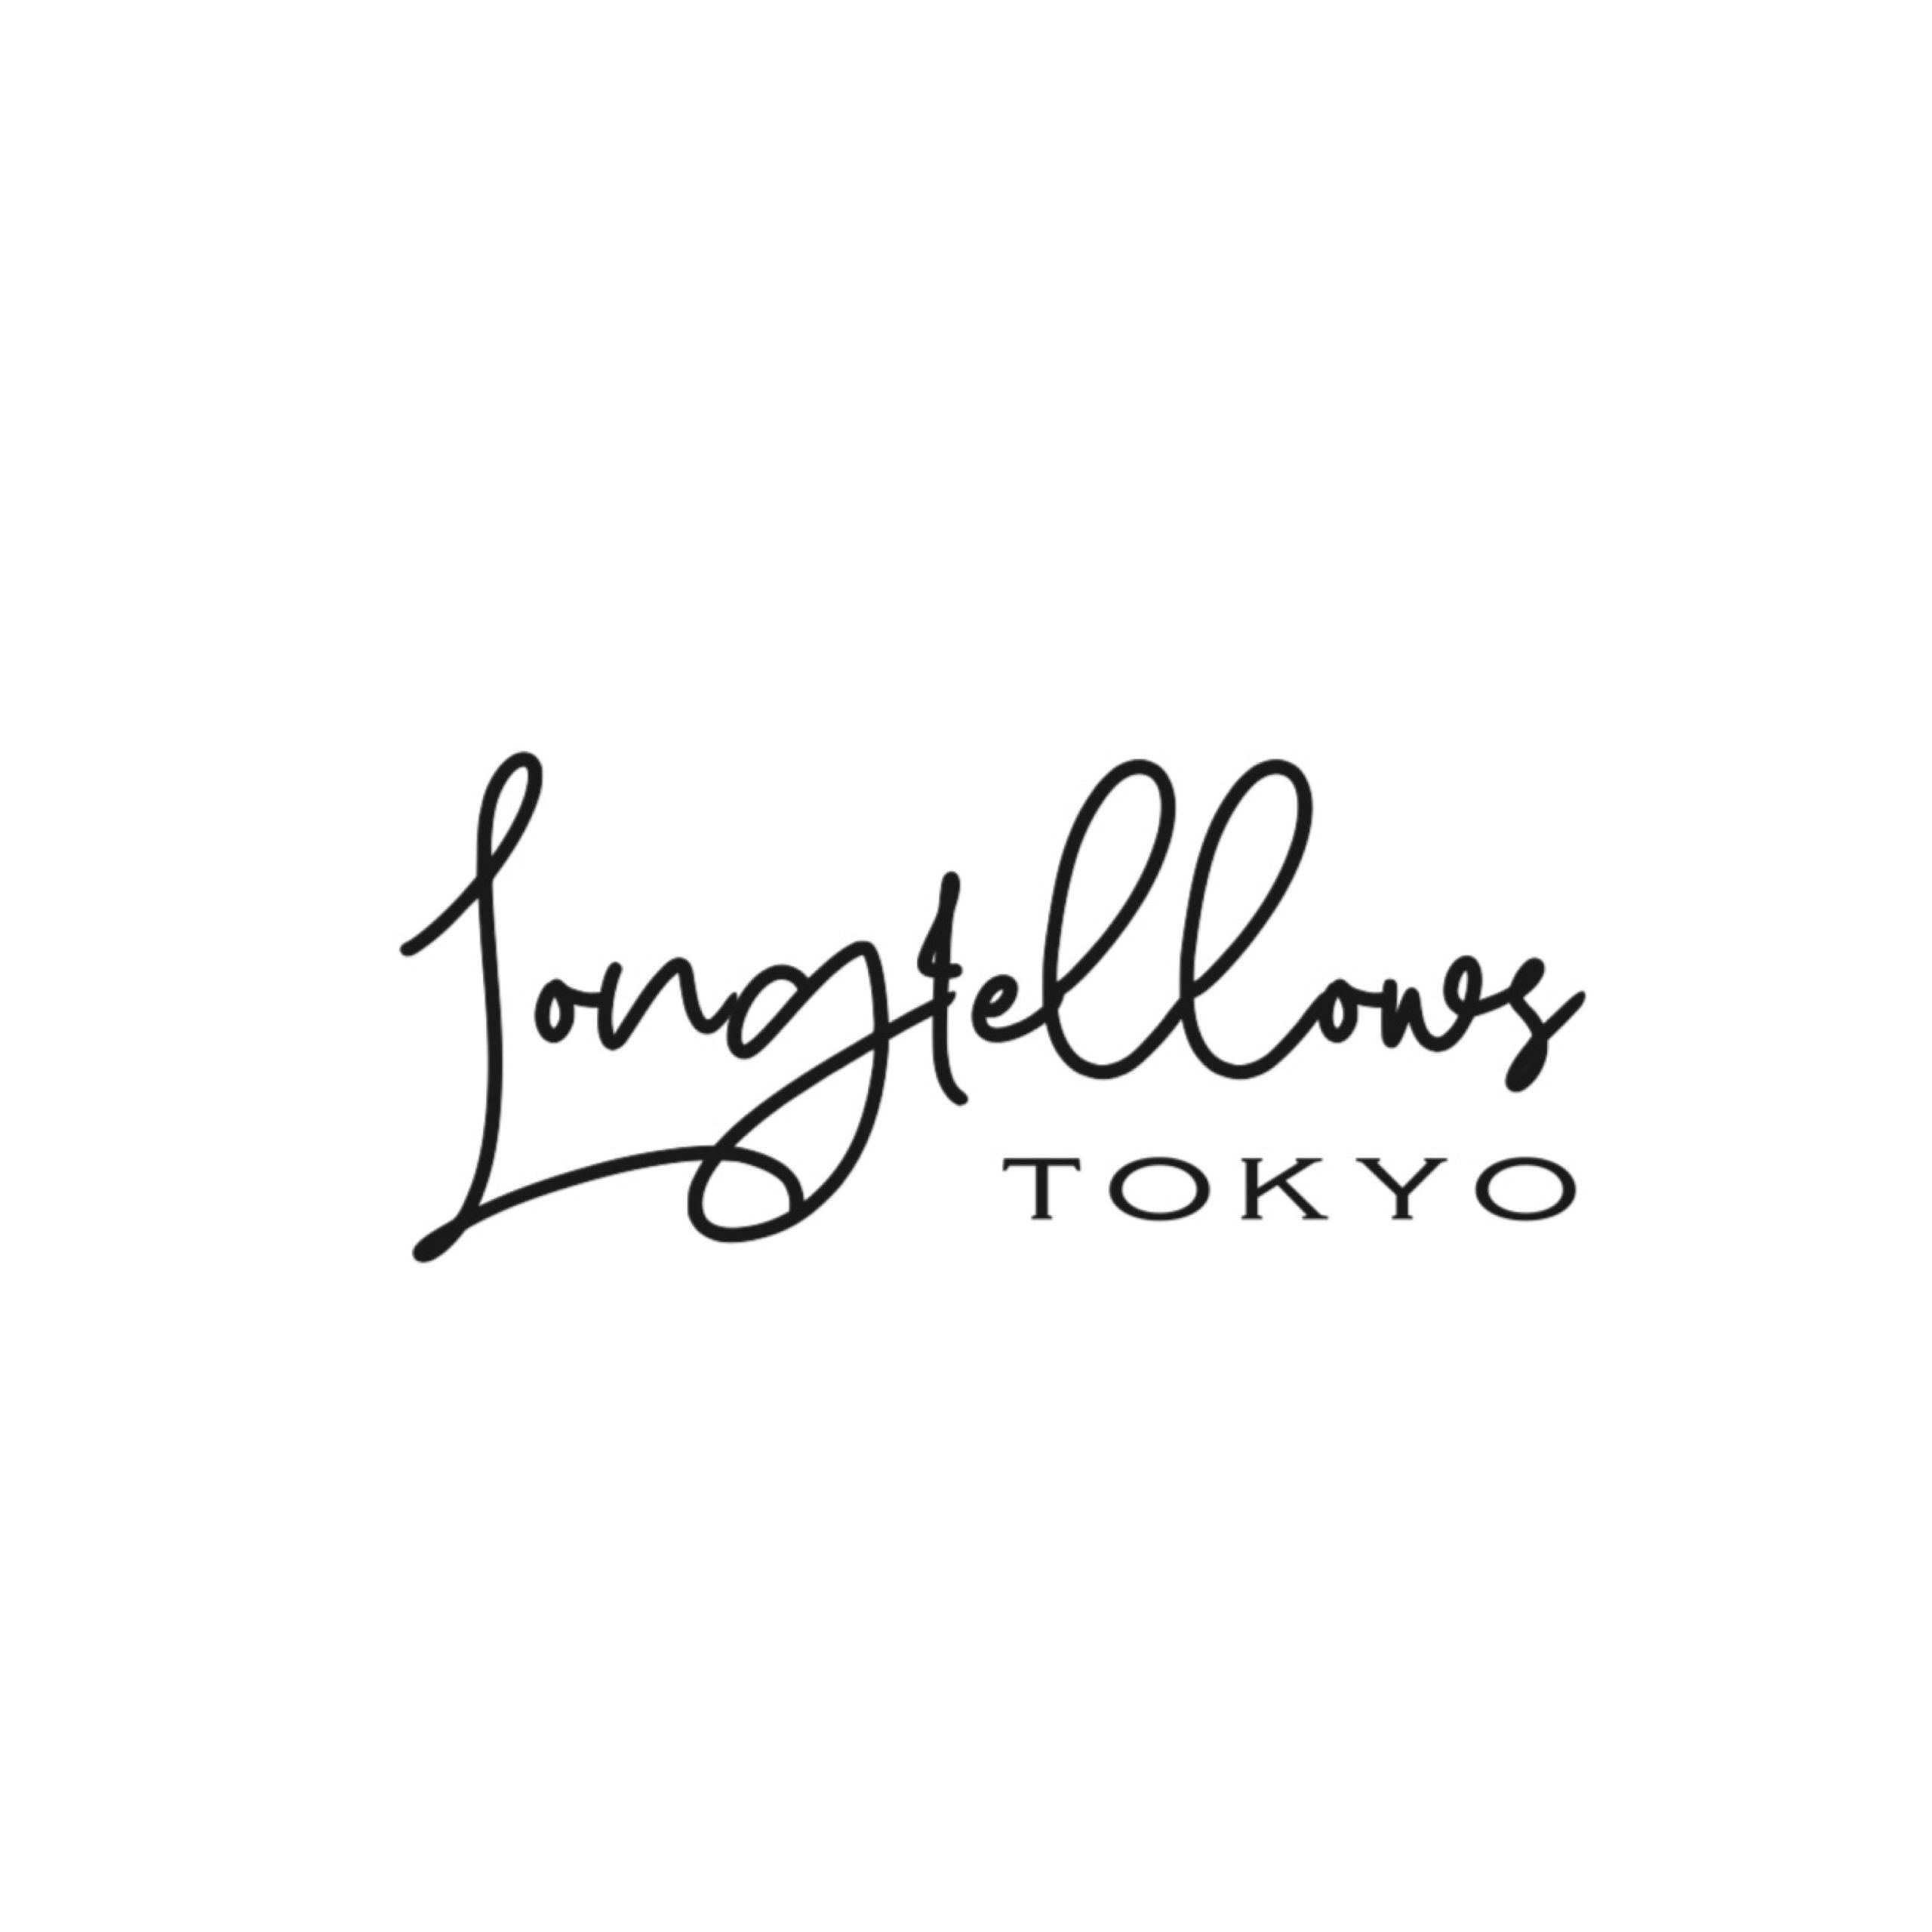 LONGFELLOWS TOKYO